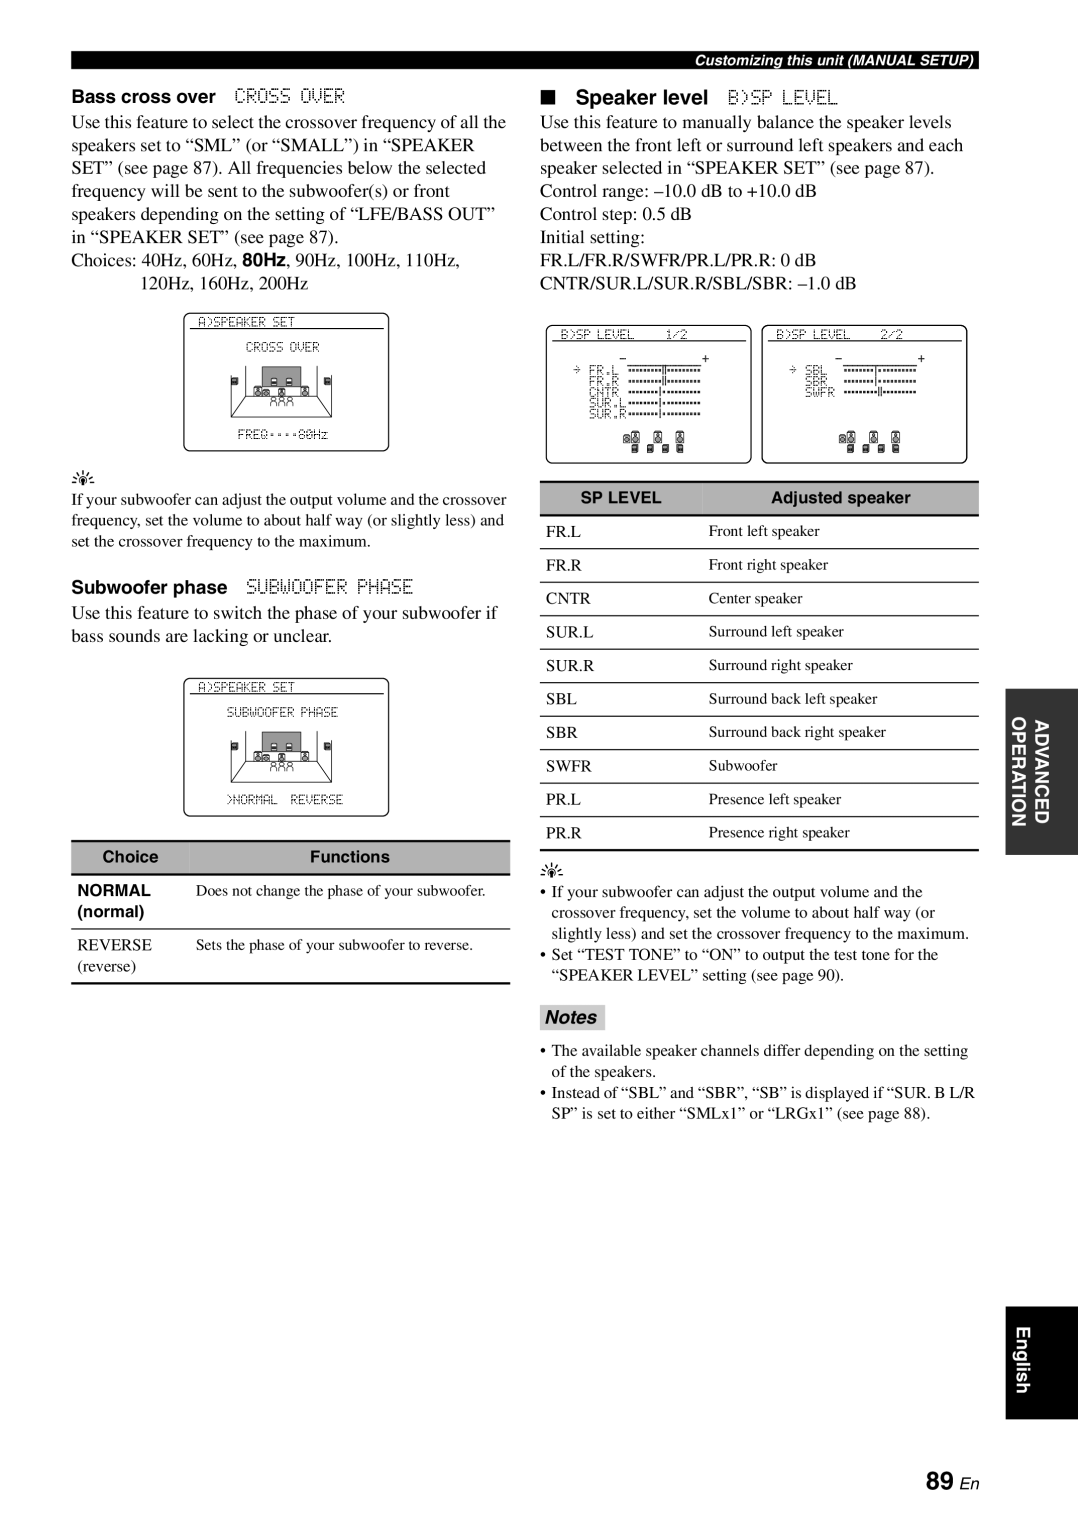 Yamaha HTR-6180 owner manual 89 En, Speaker level BSP LEVEL, Notes 